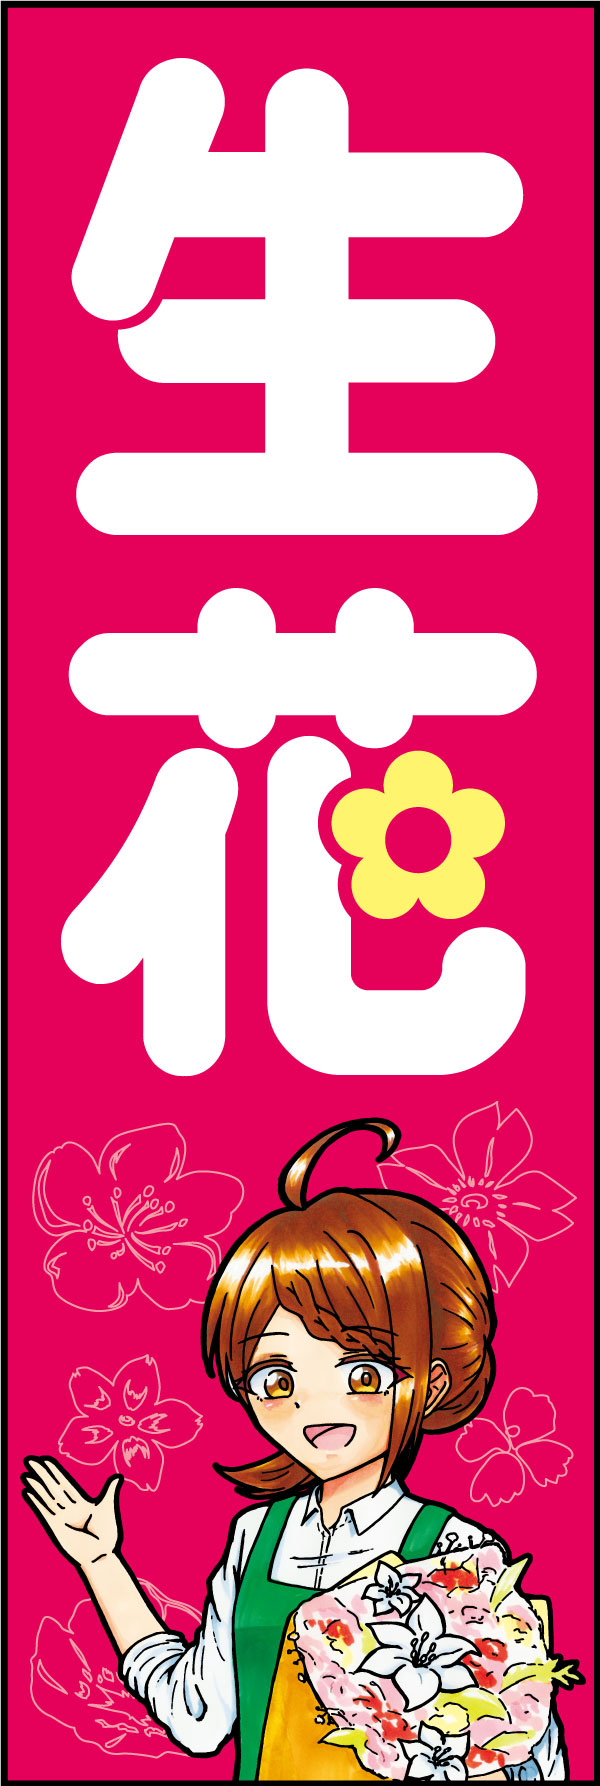 生花 162_01「生花」のぼりです。シンボリックな「花」の文字と、親しみやすいイラストの組み合わせで店先を彩ります。（D.N） 